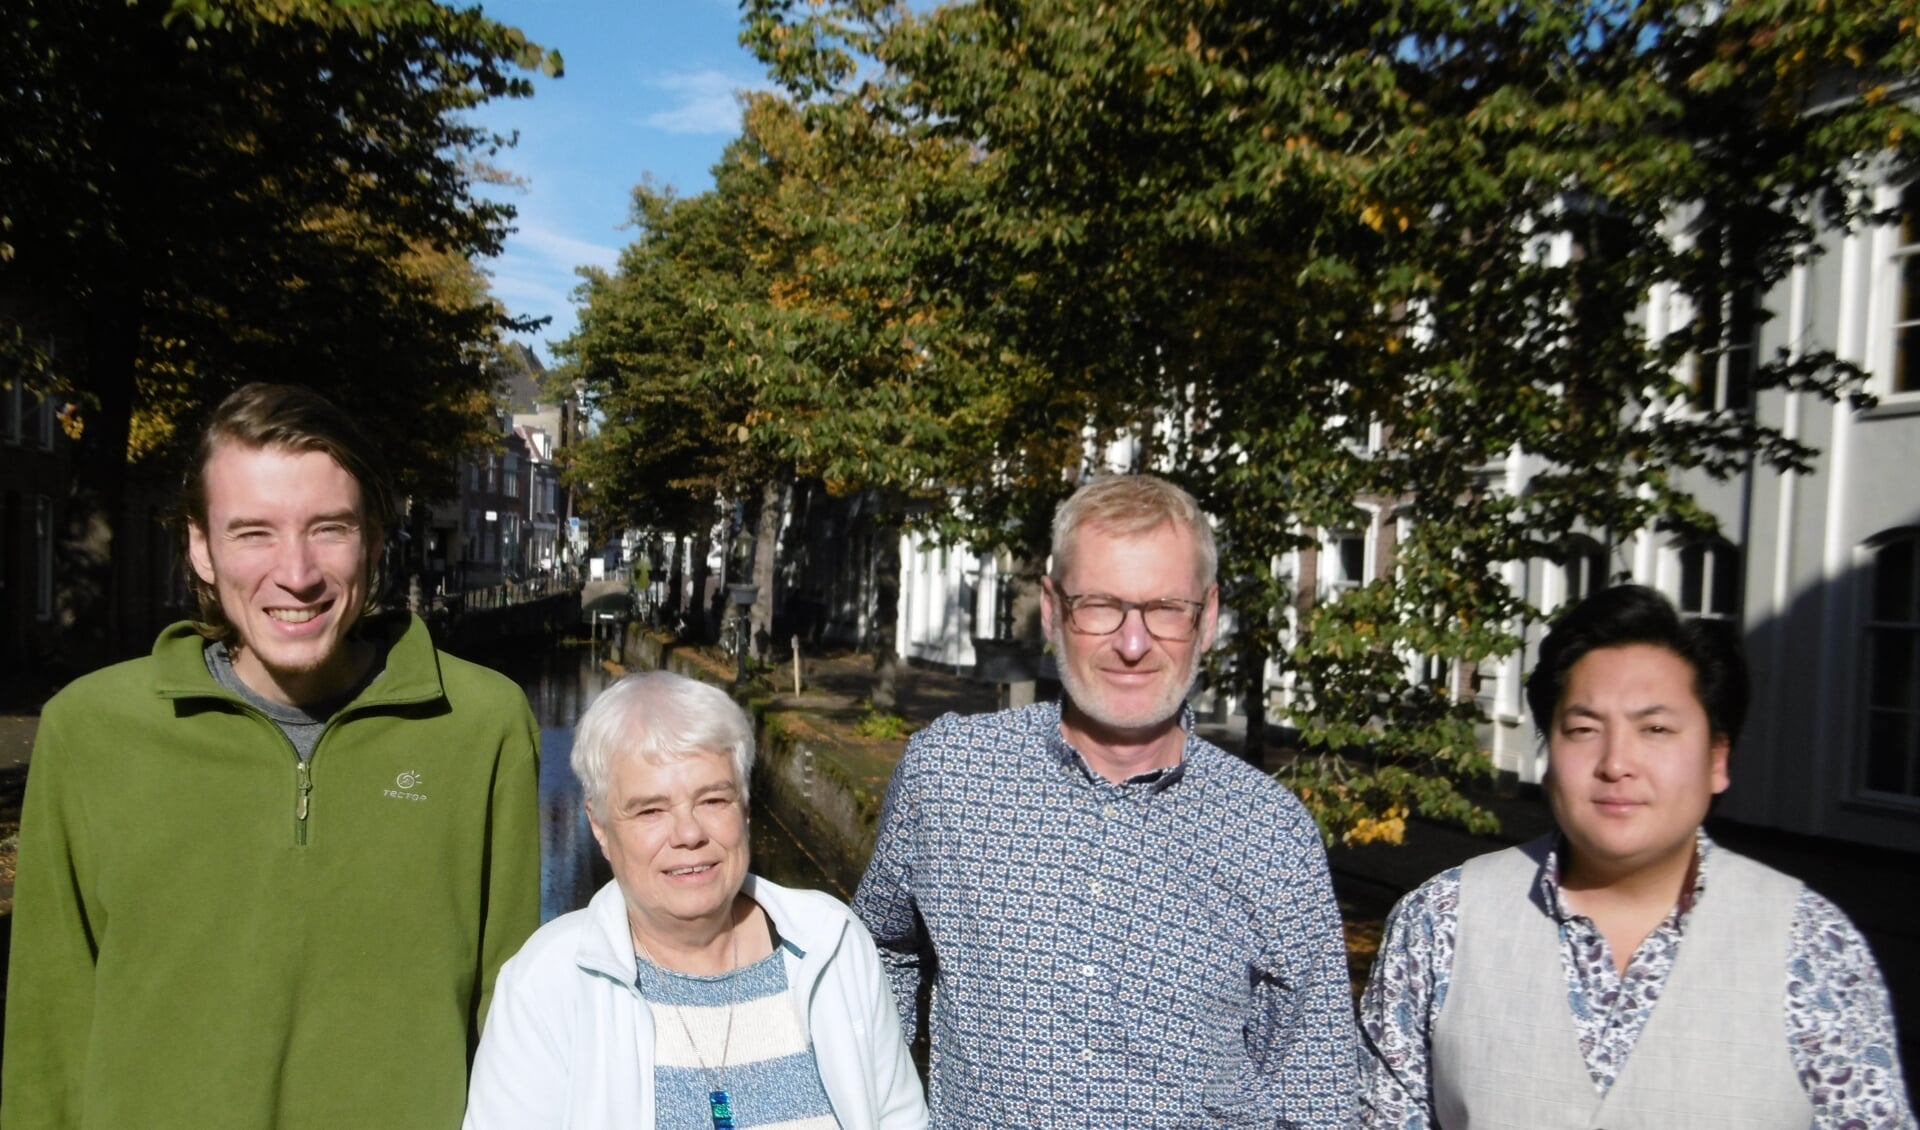 Vlnr: klimaatactivist Jeroen Thunnissen,
geschiedenisdocent Renée Schreuder, vinoloog en wijnproever Eric Ivens en dichter Twan Vet.  